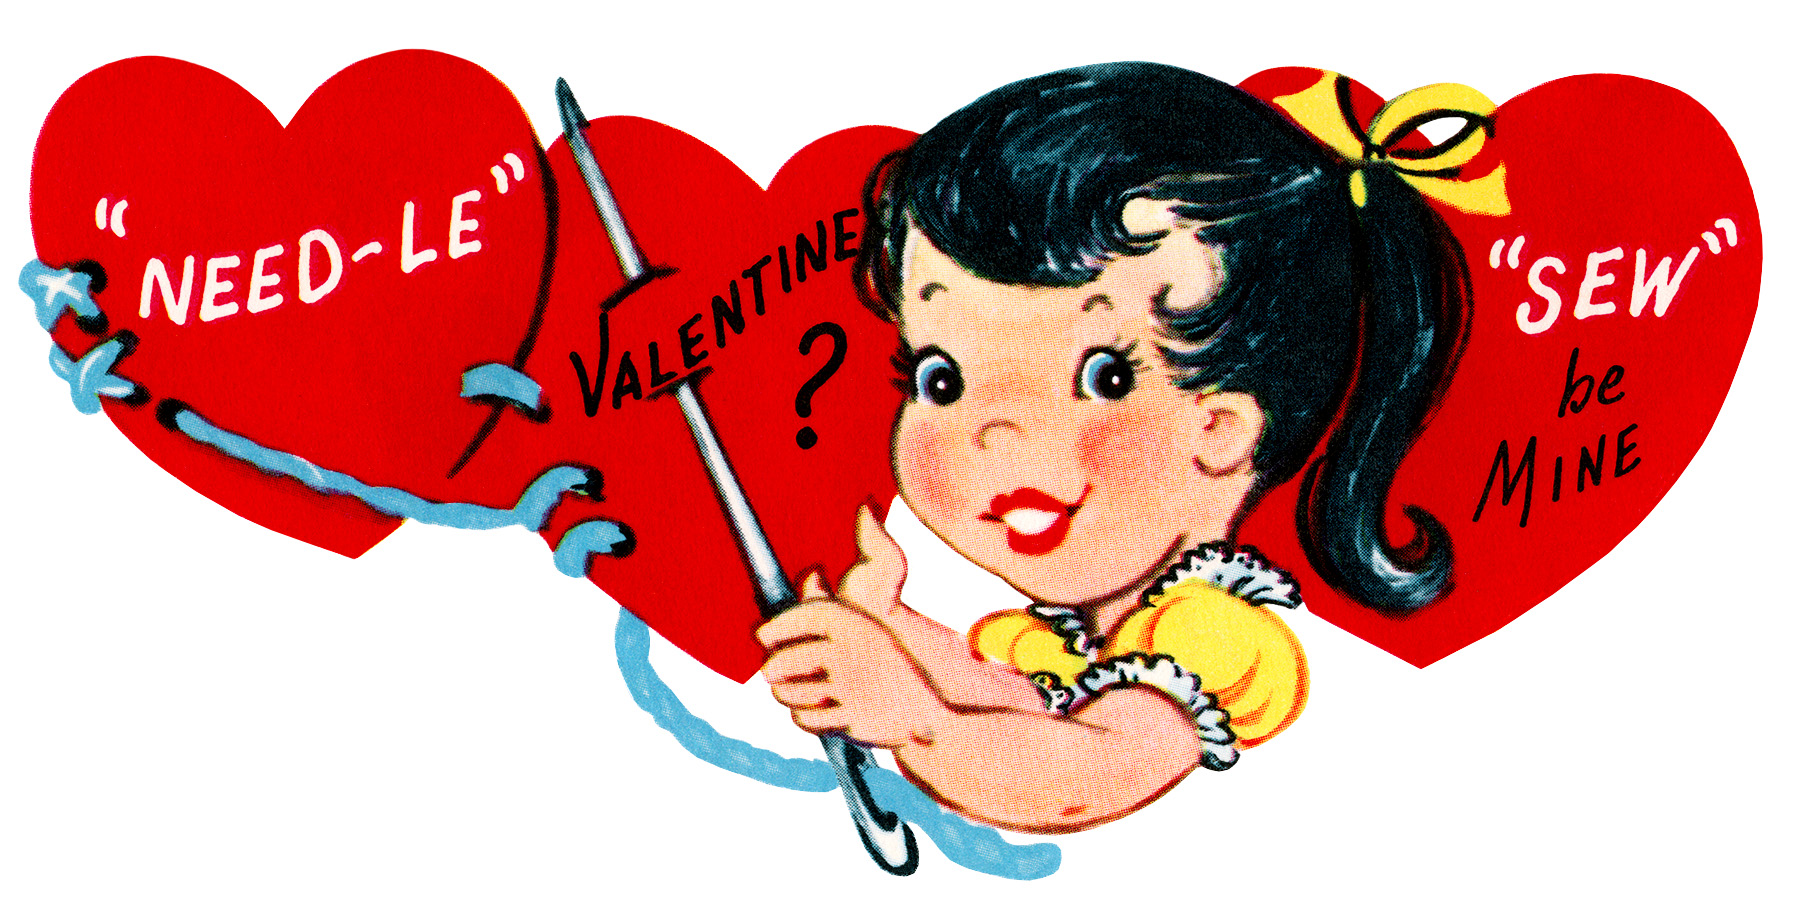 sew be mine valentine, vintage valentine clip art, girl sewing hearts, retro valentine card, printable valentines, old fashioned childrens valentine